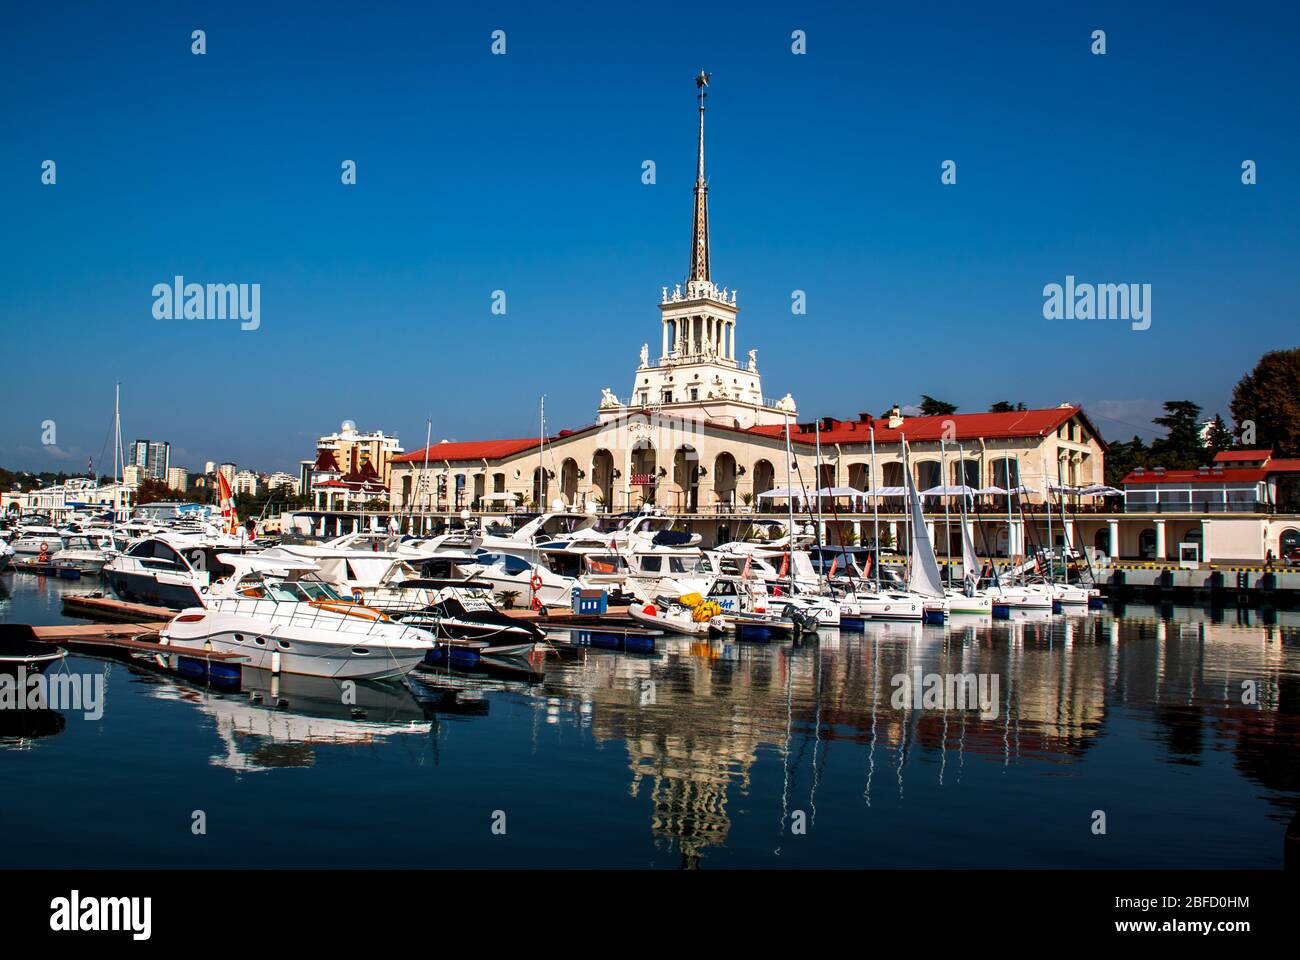 Sotchi / Russie - Novembre 04 2014: Bâtiment de station marine et yachts, bateaux ancrés dans le port de Sotchi. Russie. Banque D'Images